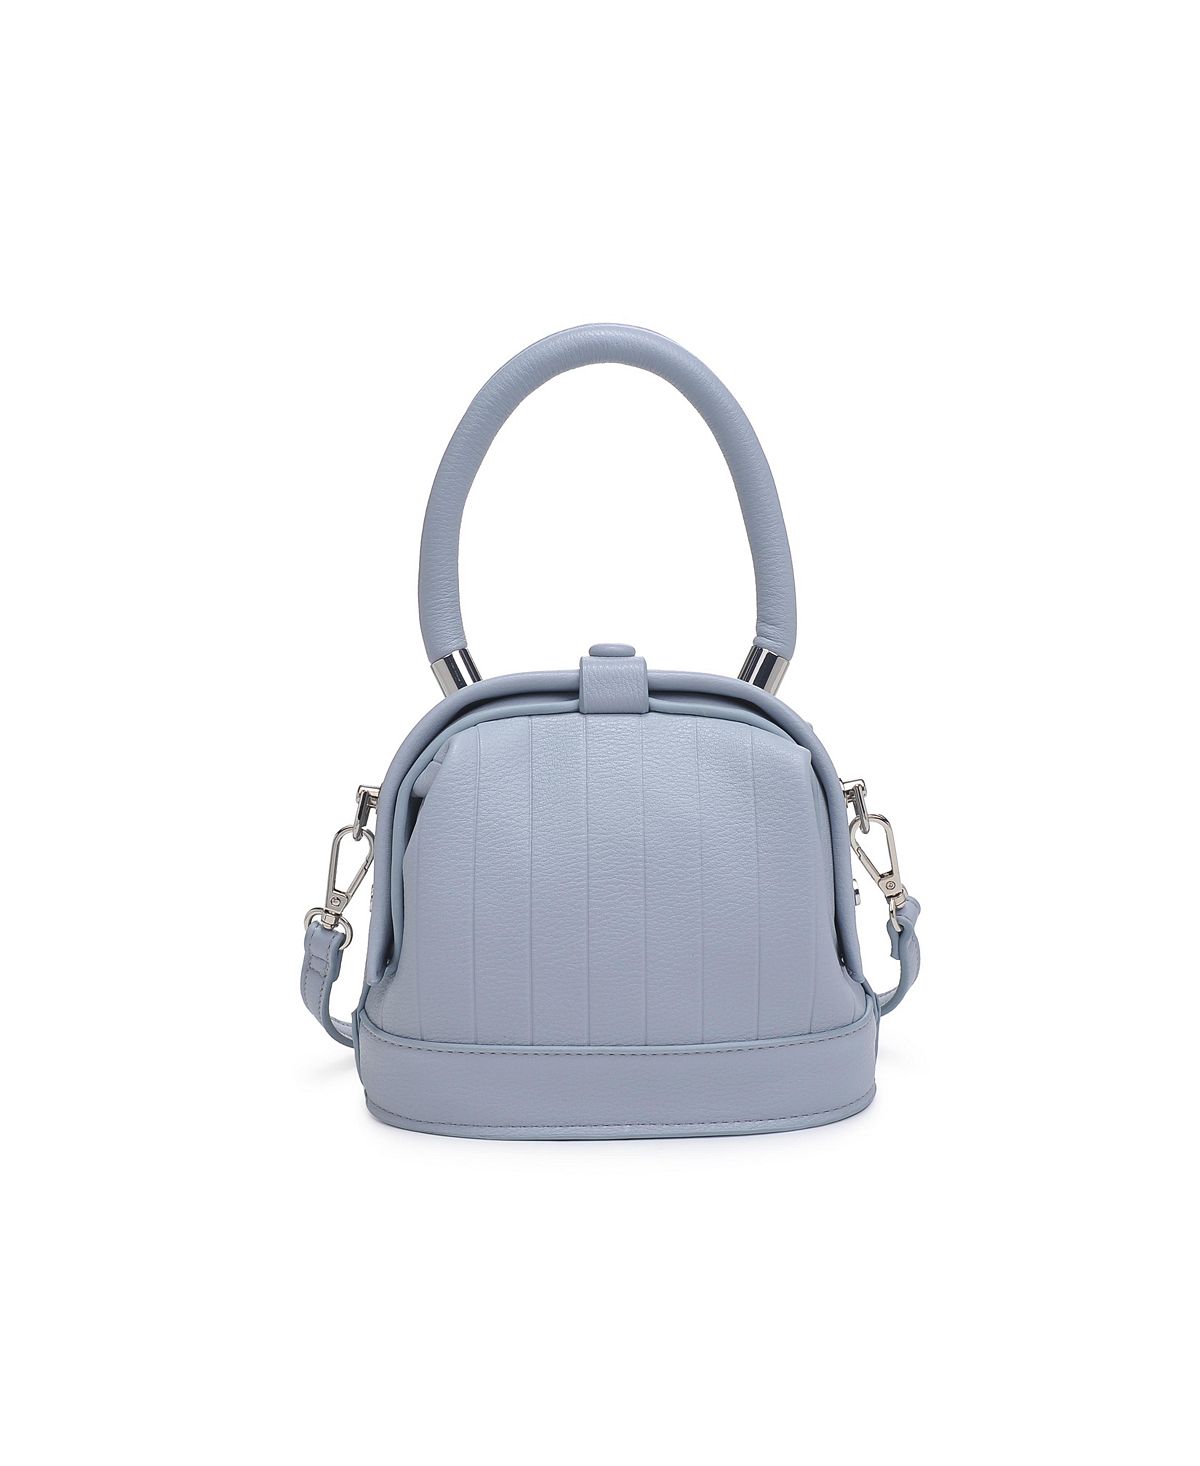 Миниатюрная сумка через плечо Charmain Moda Luxe миниатюрная сумка через плечо charmain moda luxe черный